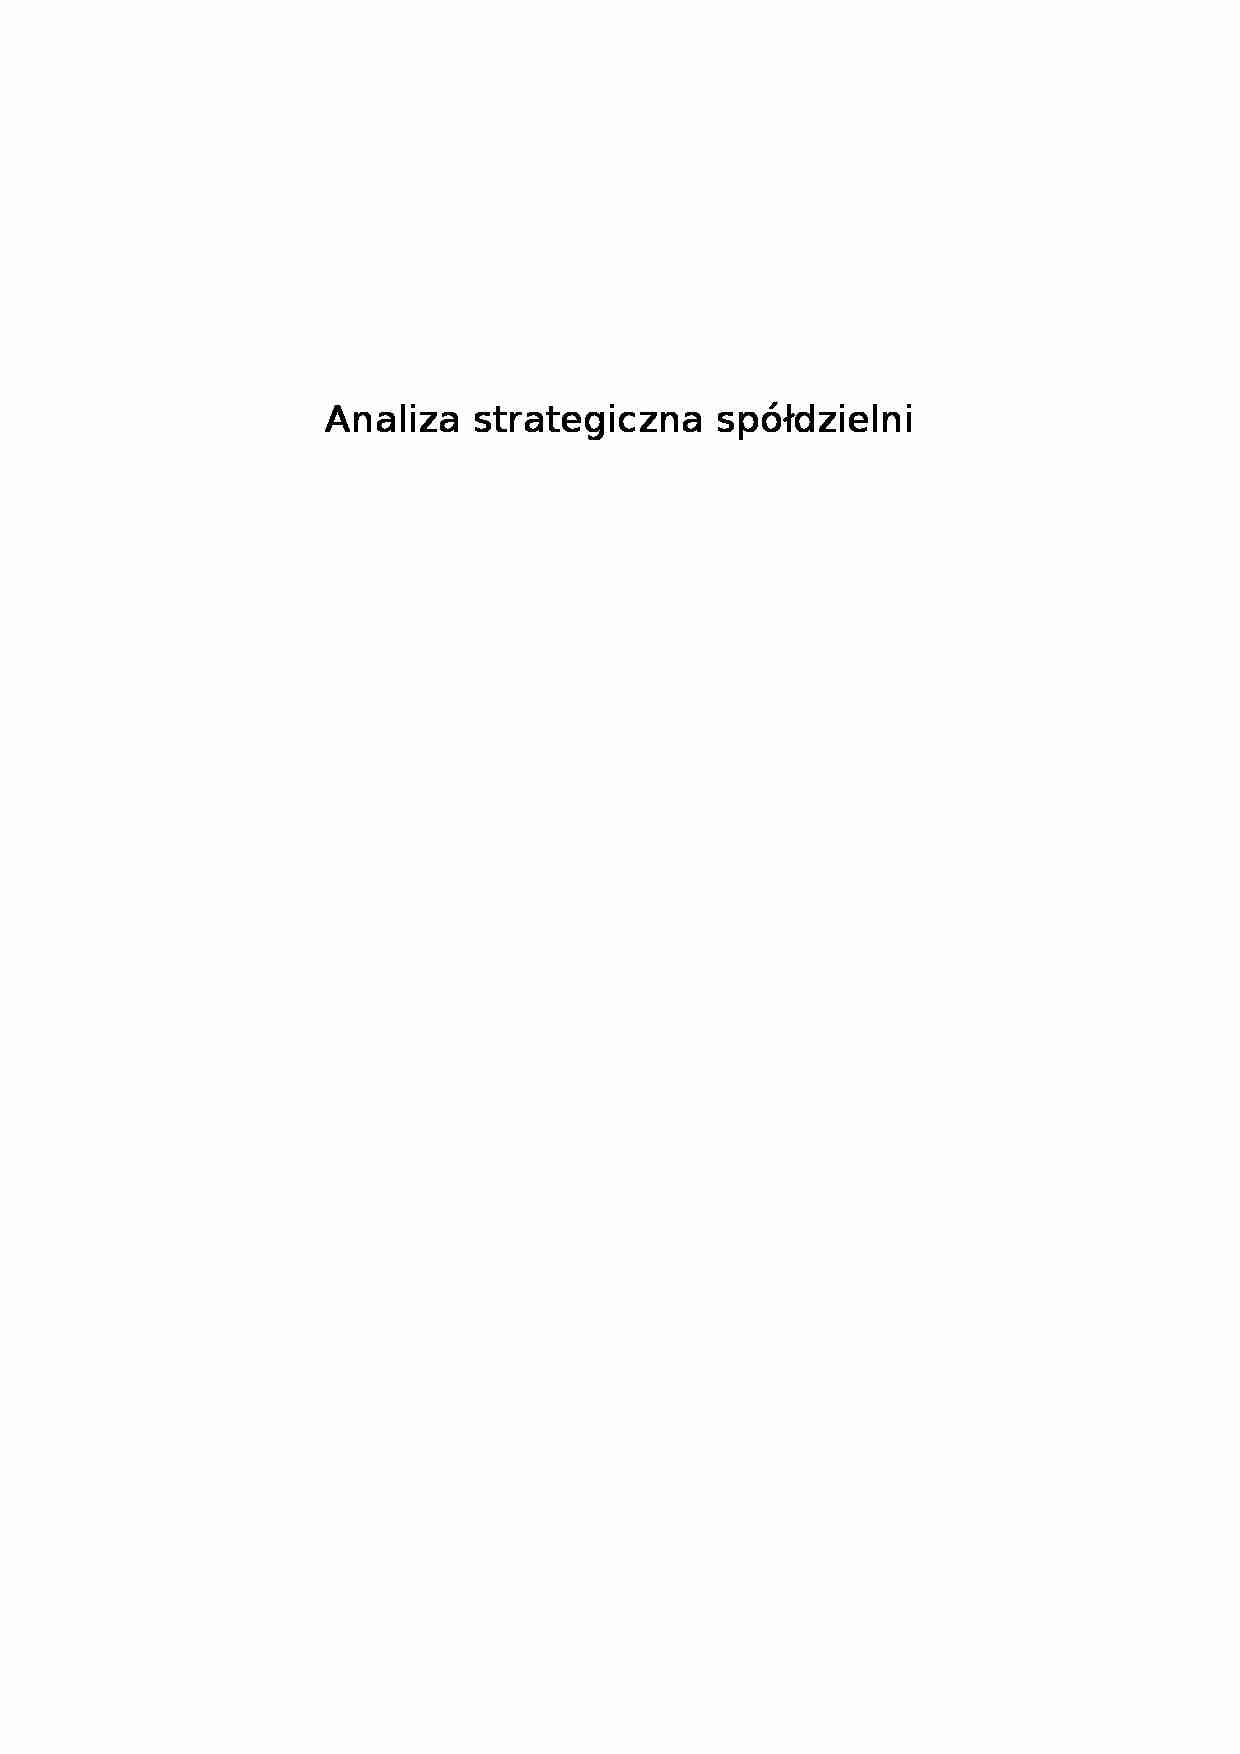 analiza strategiczna spółdzielni - projekt - strona 1